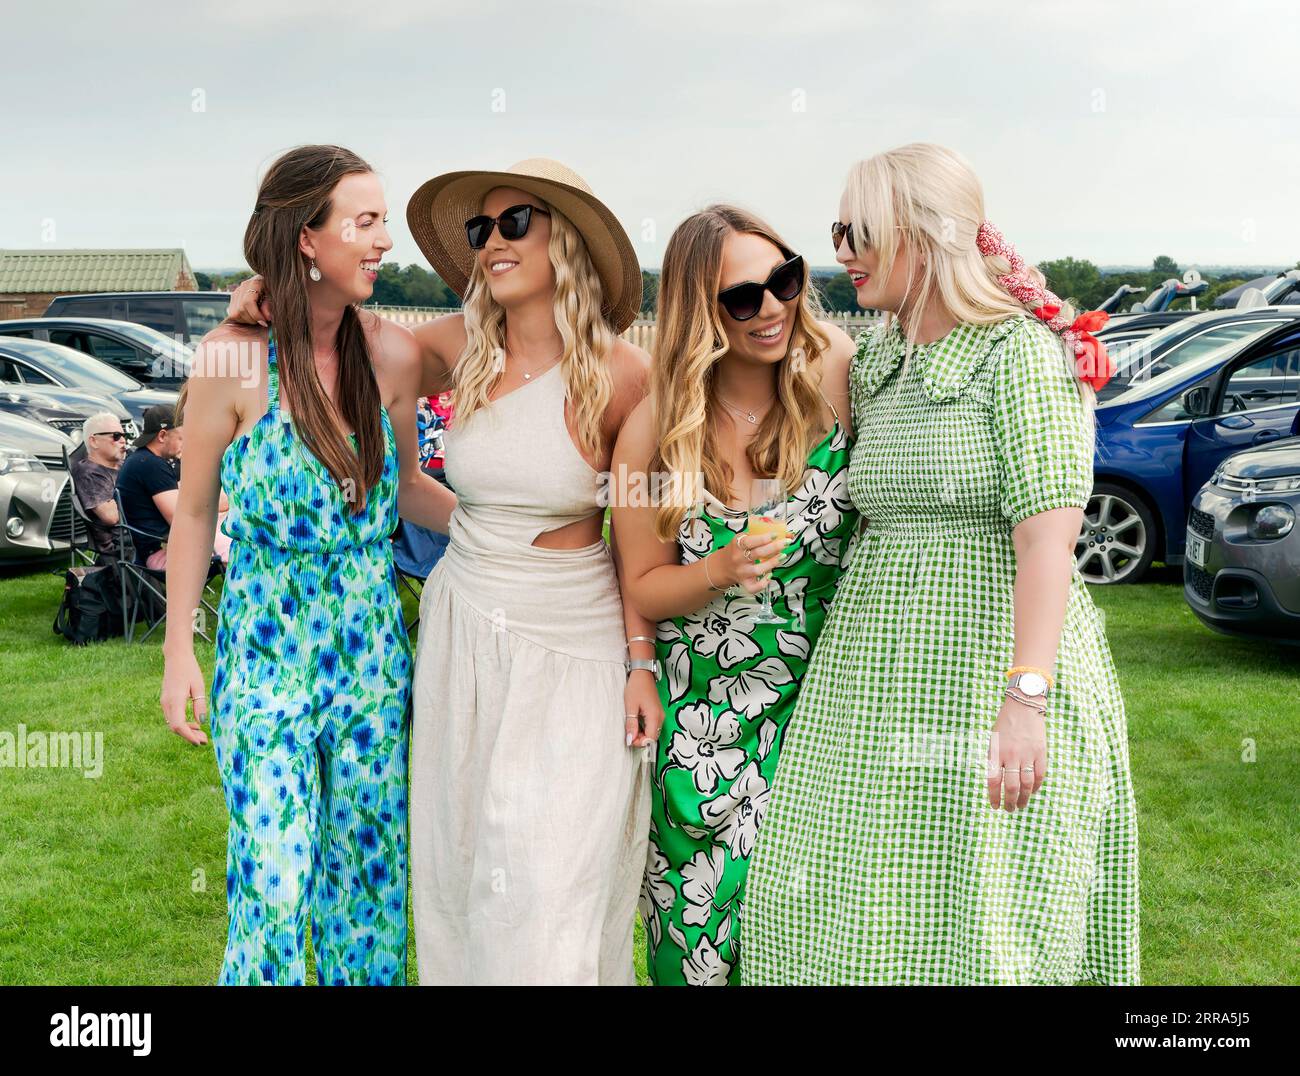 Un groupe de quatre femmes riant et souriant et vêtues de vêtements colorés profite de la Journée des dames aux courses à Beverley, au Royaume-Uni. Banque D'Images